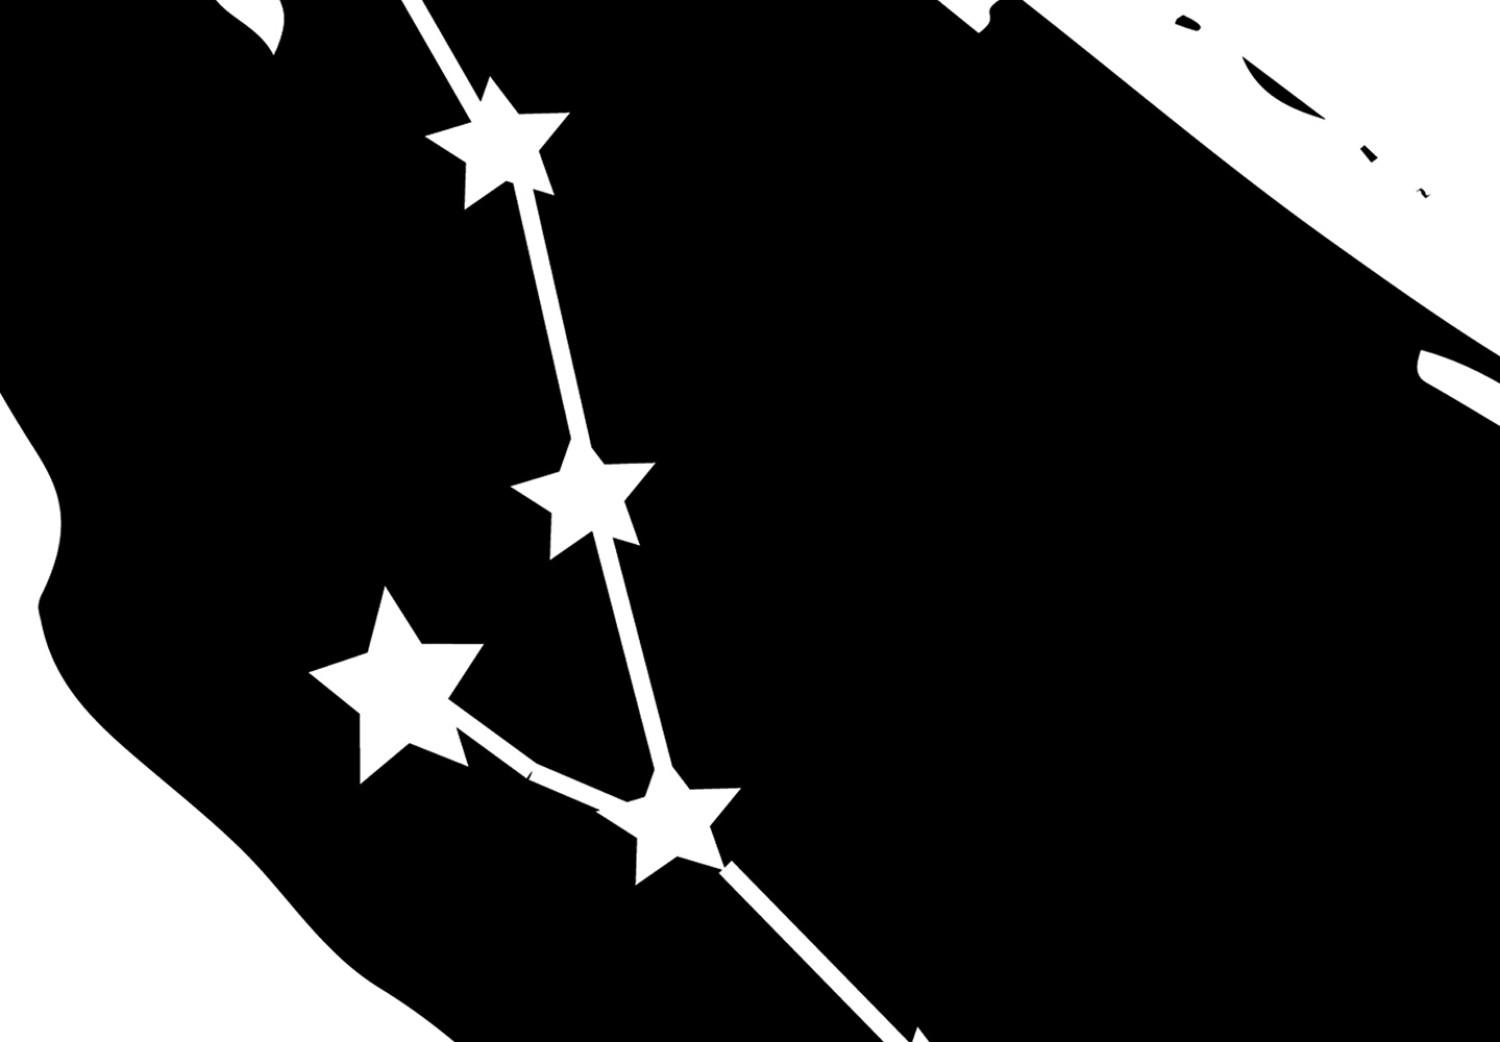 Cuadro moderno Signo del zodiaco Tauro (1 pieza) - motivo gráfico blanco y negro